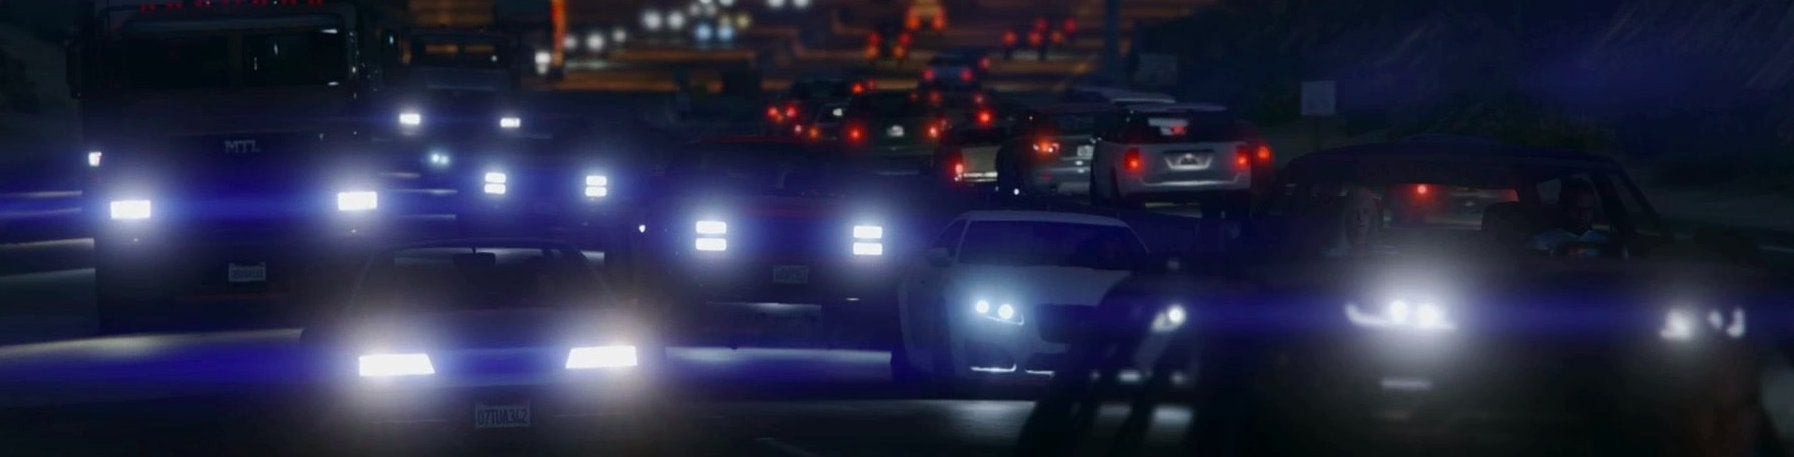 Bilder zu Digital Foundry Technik-Analyse: Grand Theft Auto 5 auf PS4